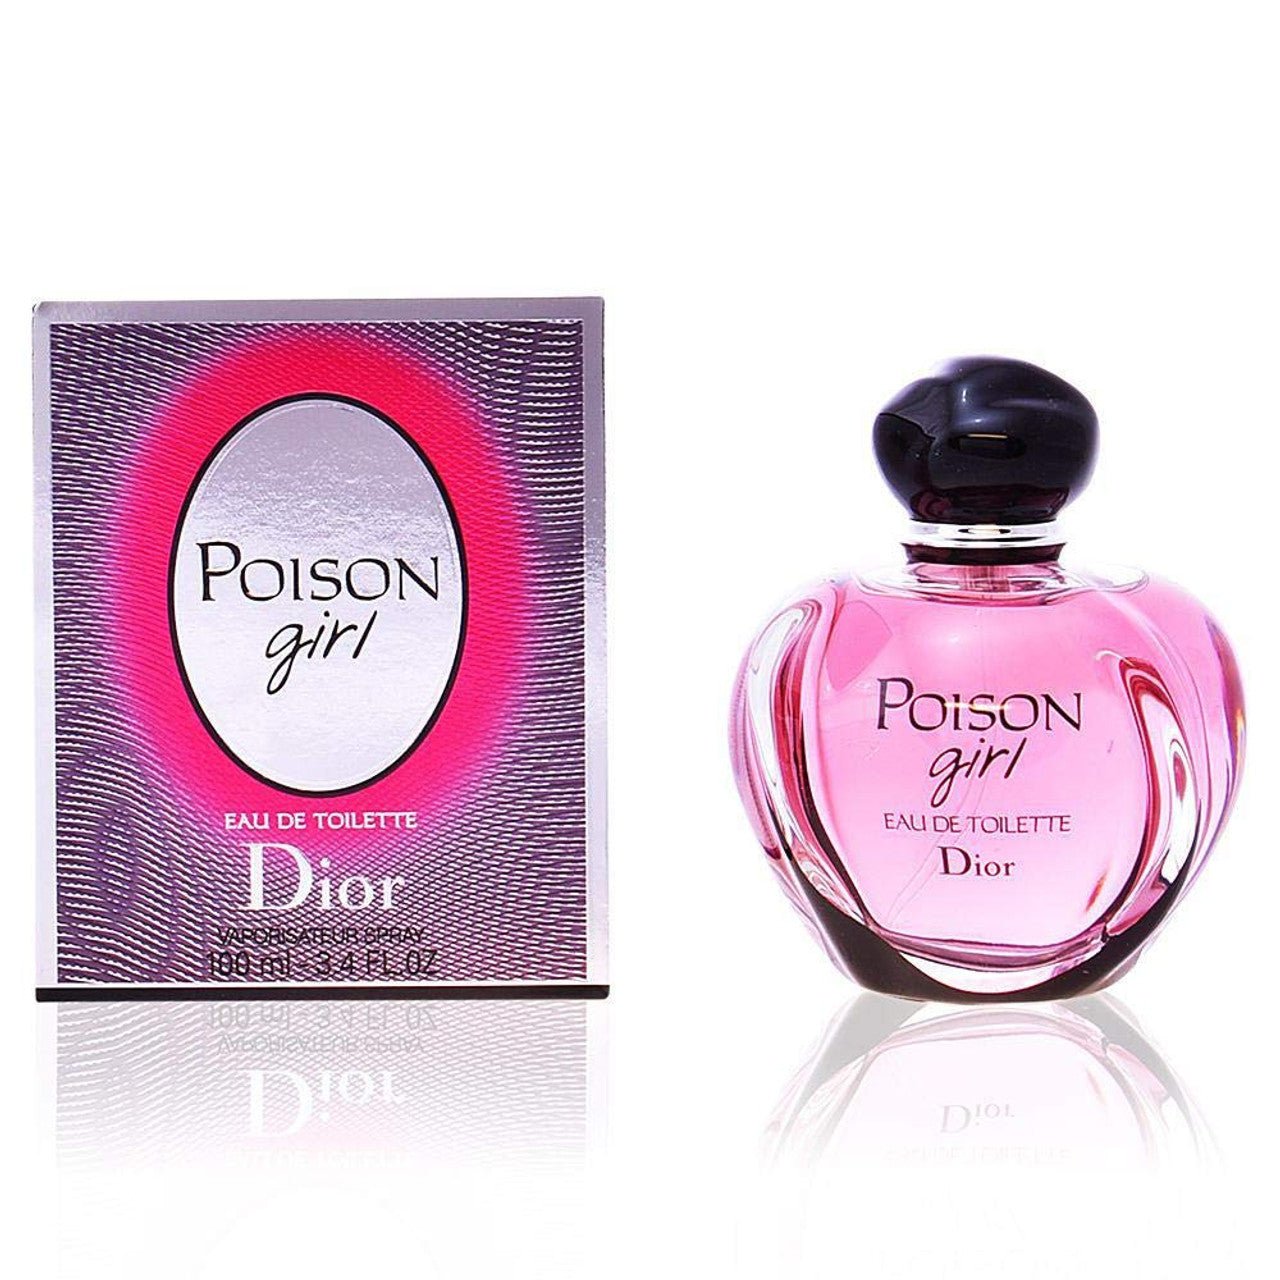 Dior Poison Girl EDT | My Perfume Shop Australia